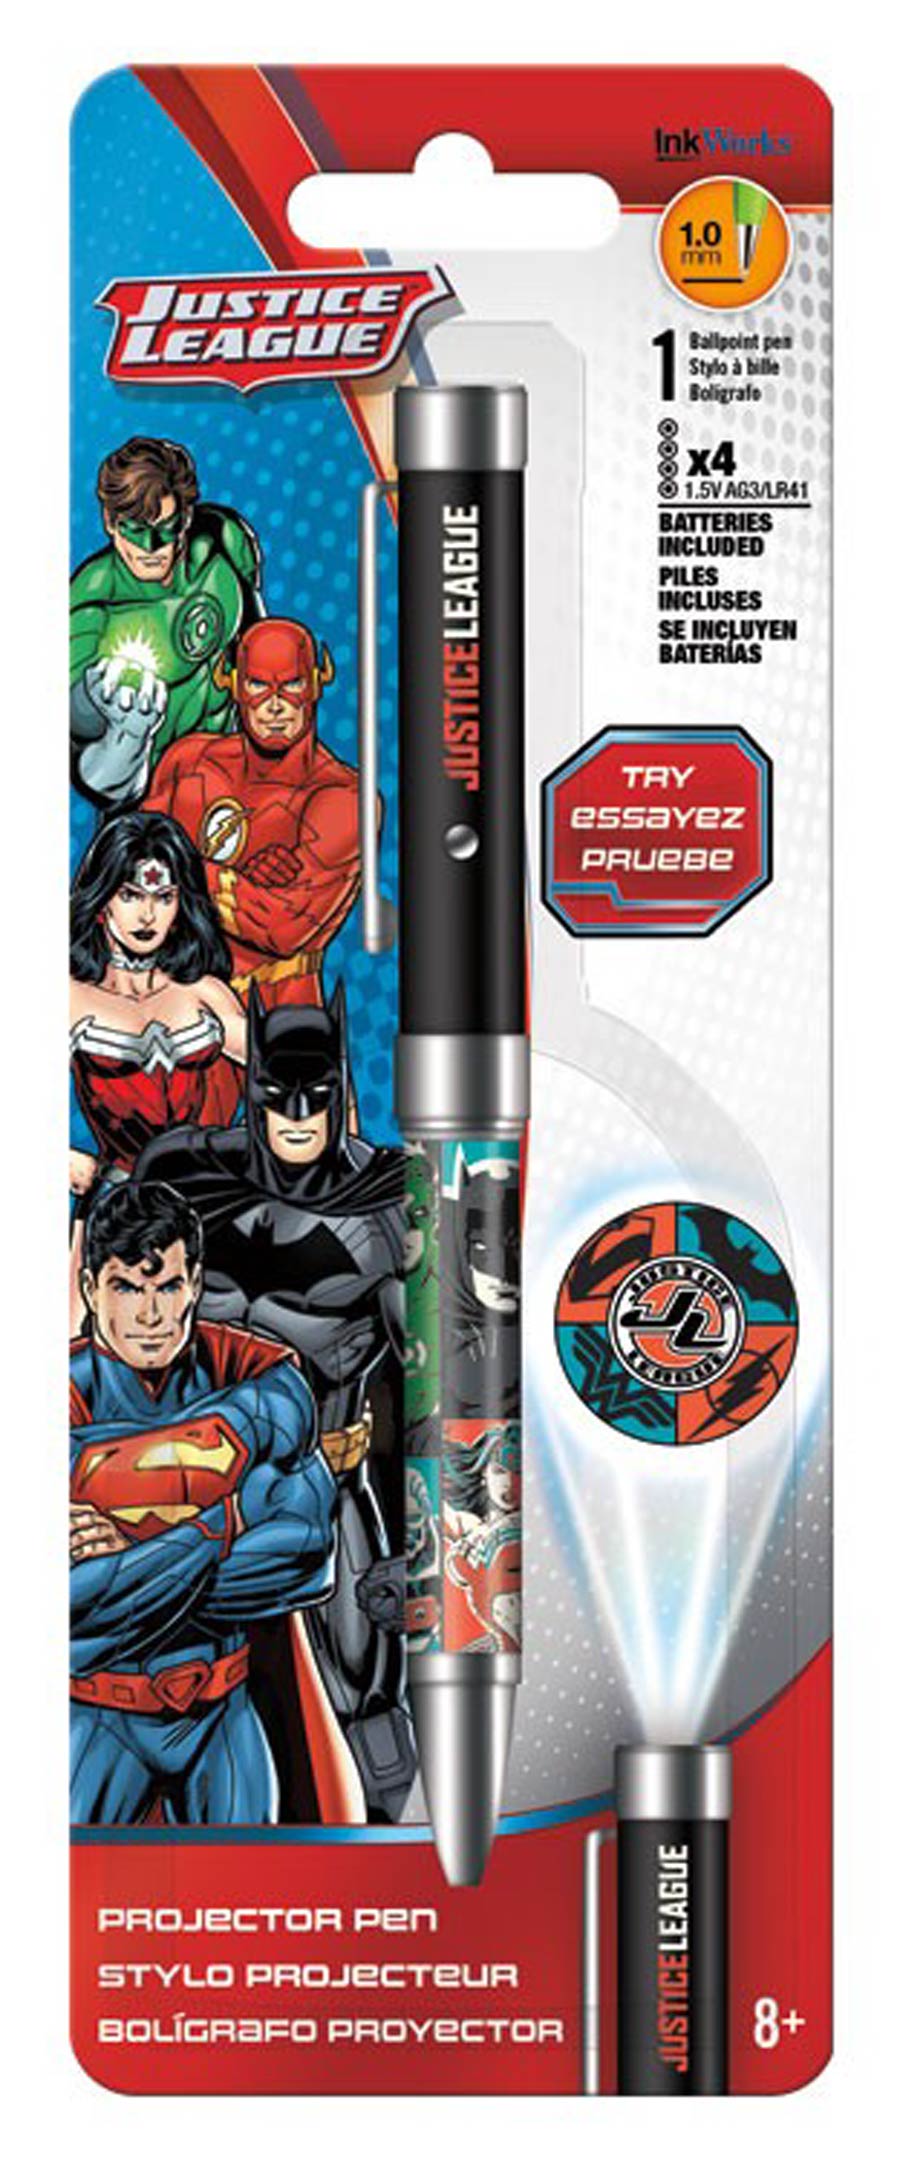 Justice League Projector Pen